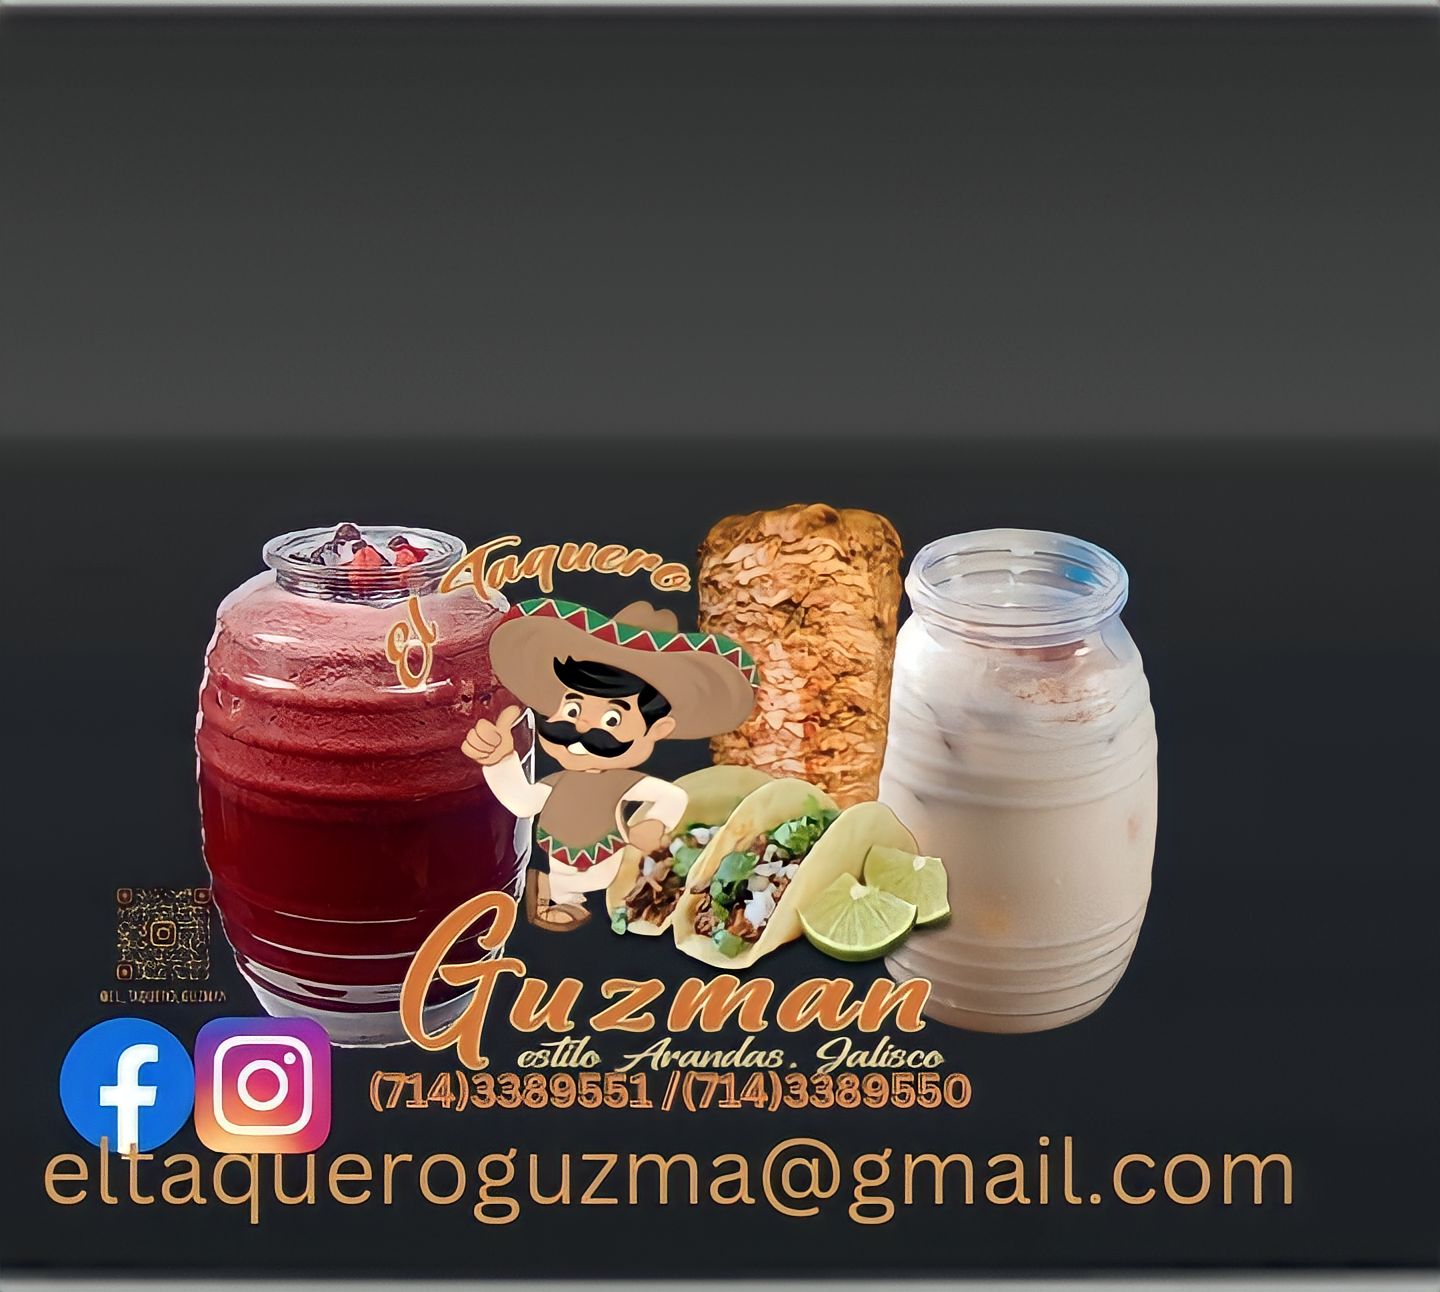 El Taquero Guzman facebook y Instagram